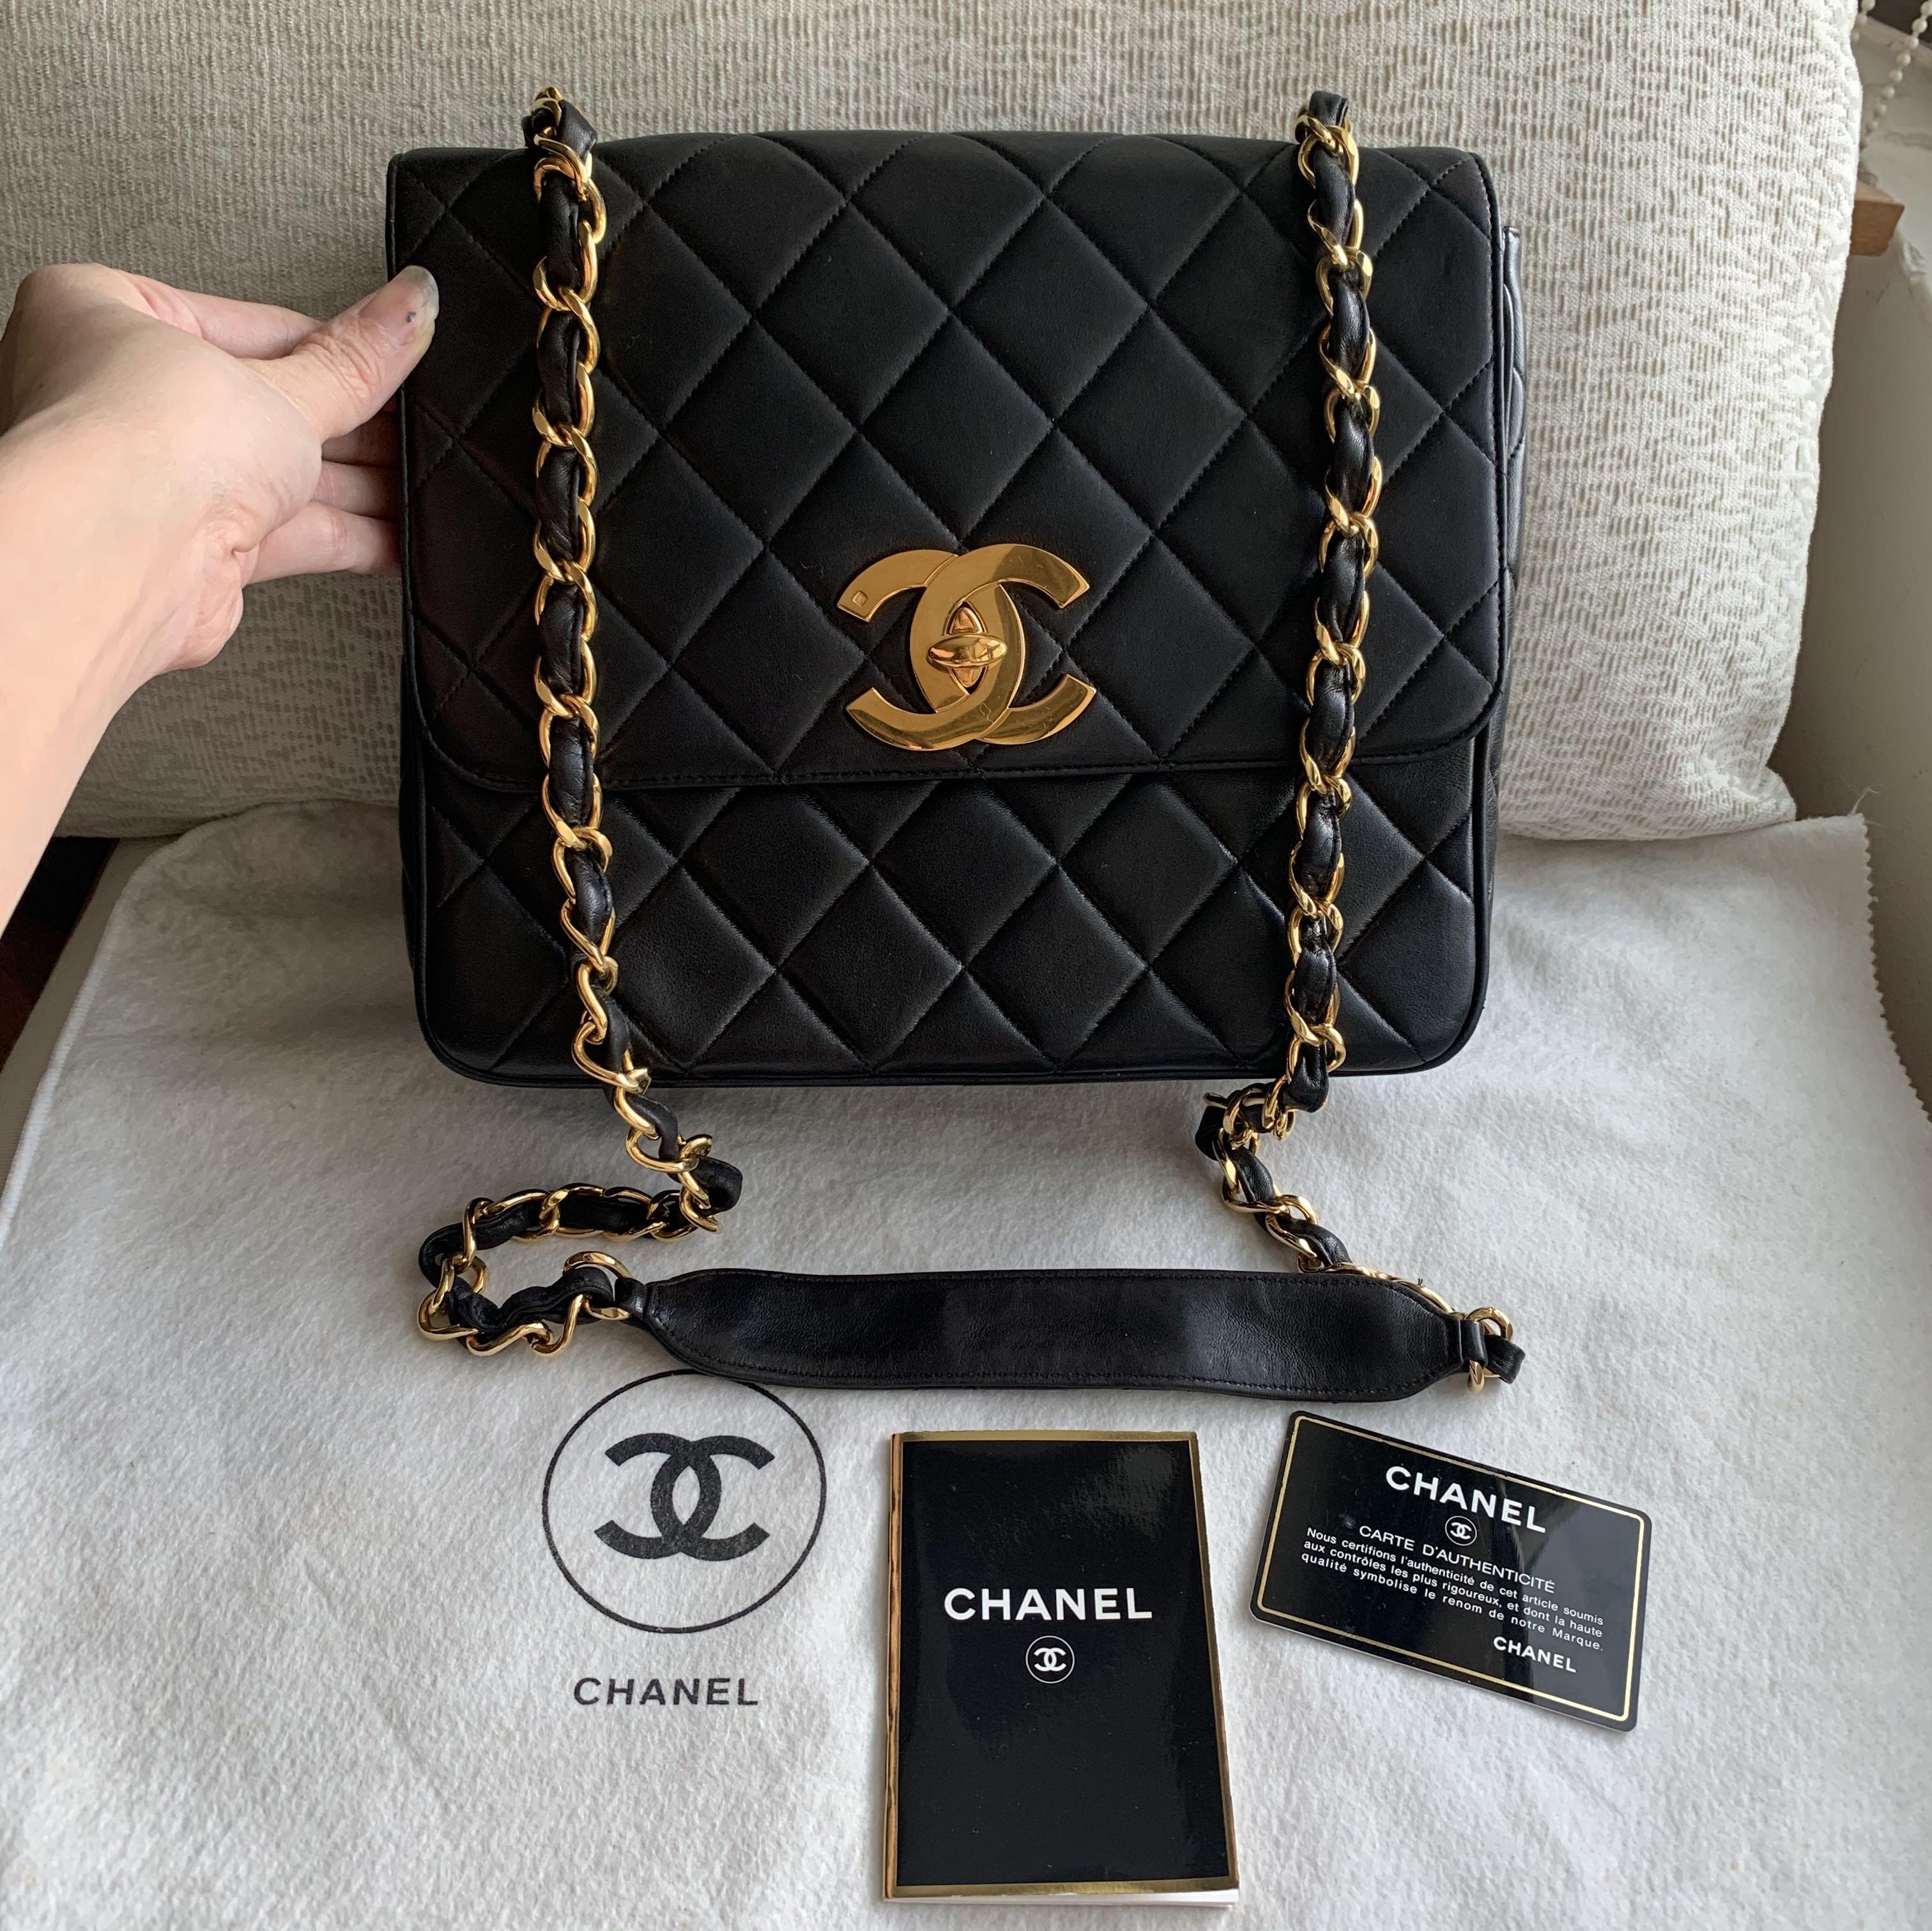 Chanel BNIB Studded Black Silver Clutch - Vintage Lux